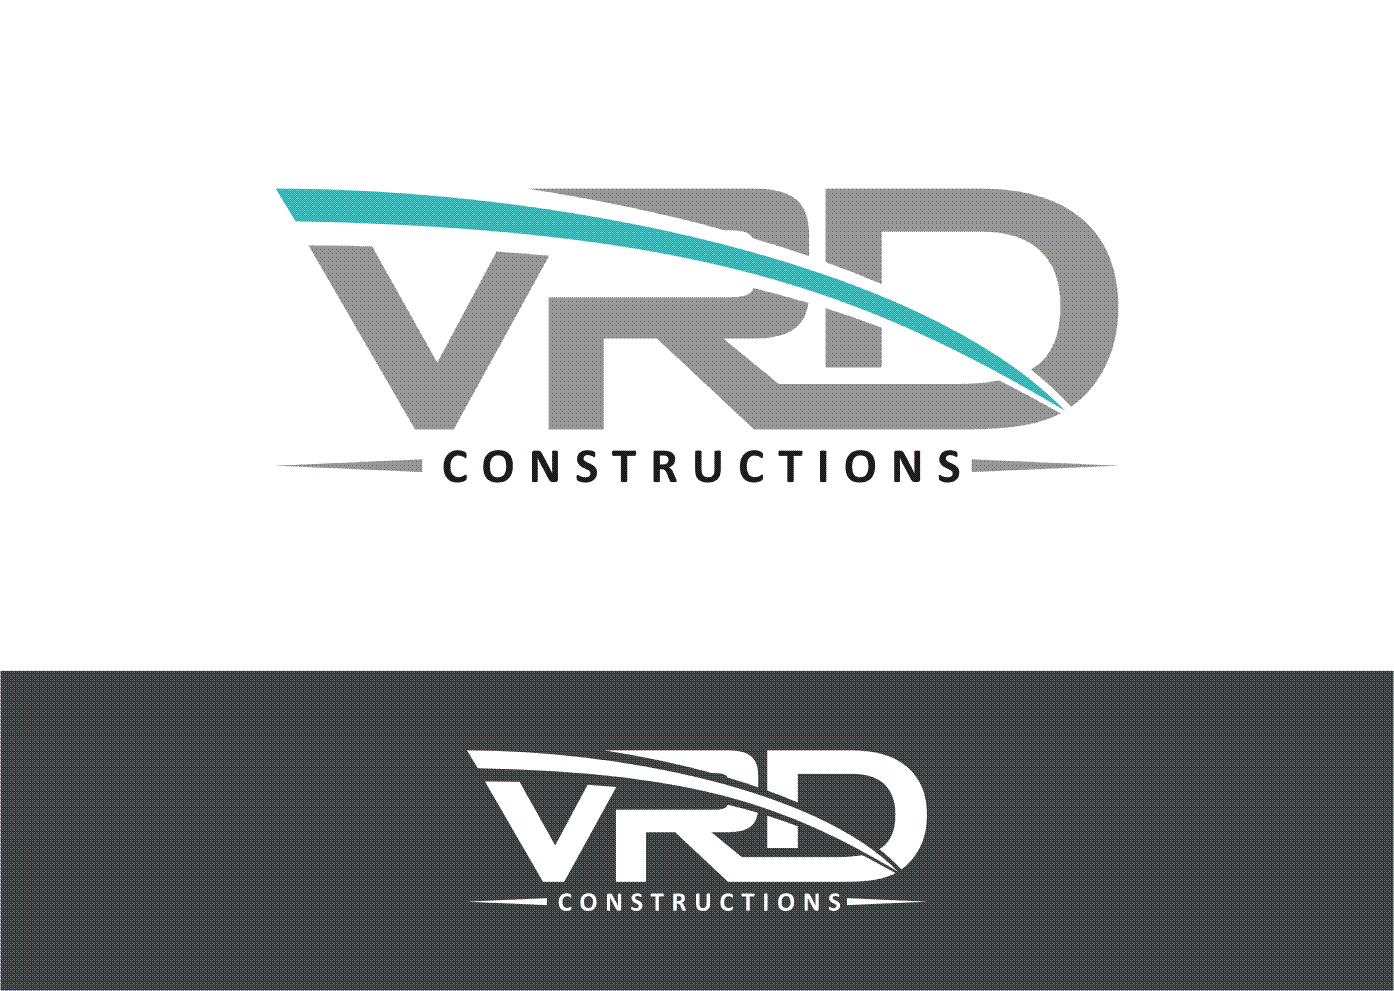 VRD Logo - Masculine, Upmarket, Professional Service Logo Design for VRD ...